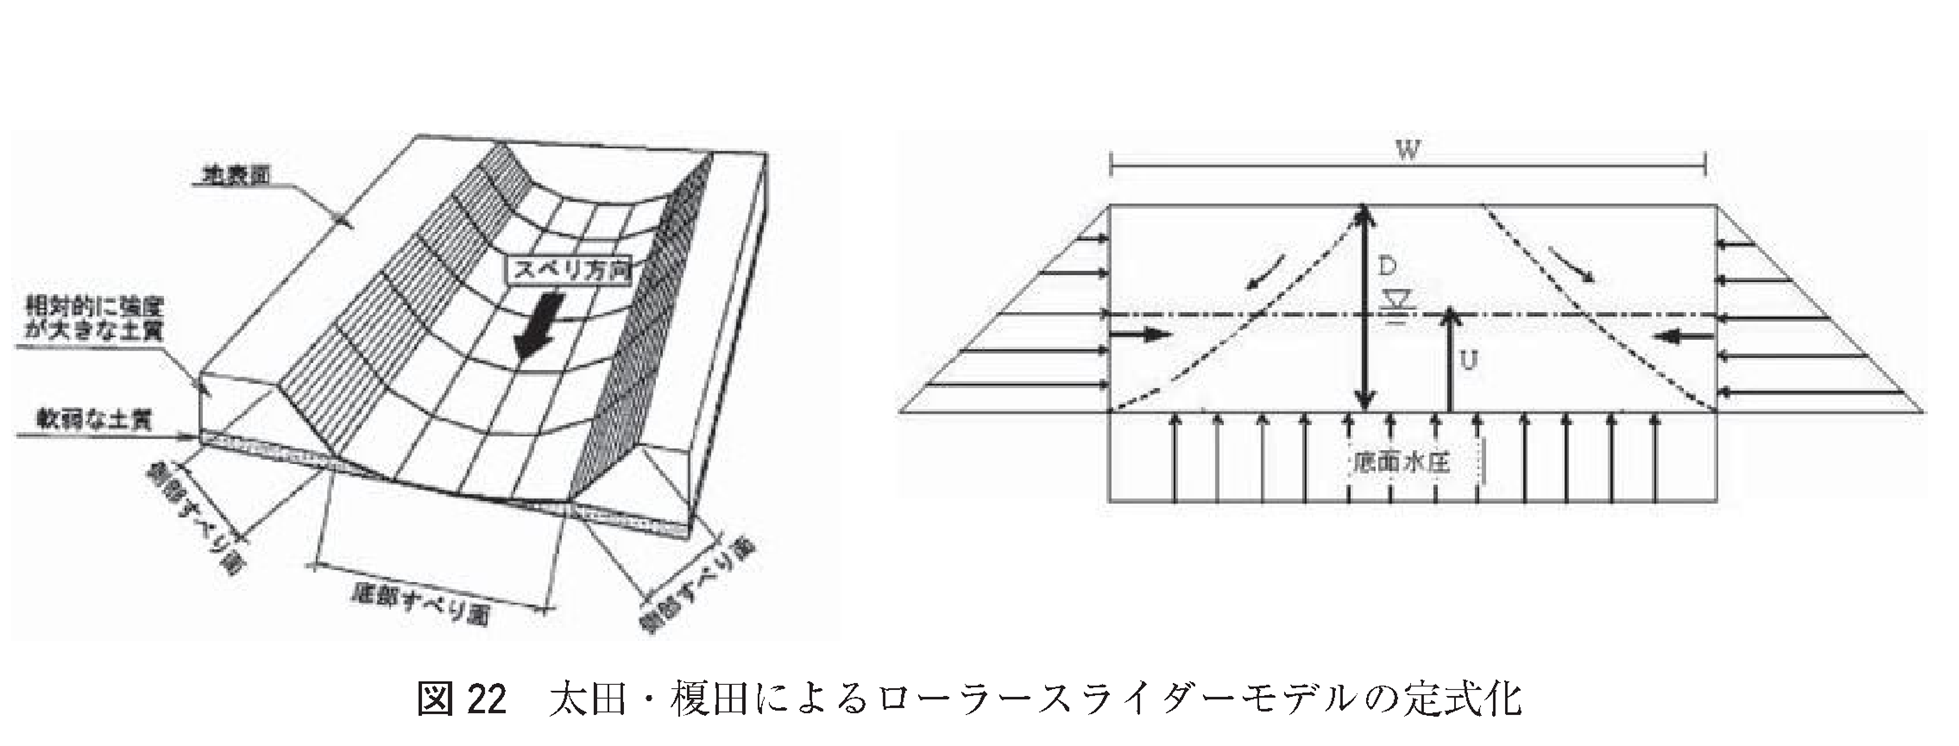 図22 太田・榎田によるローラースライダーモデルの定式化